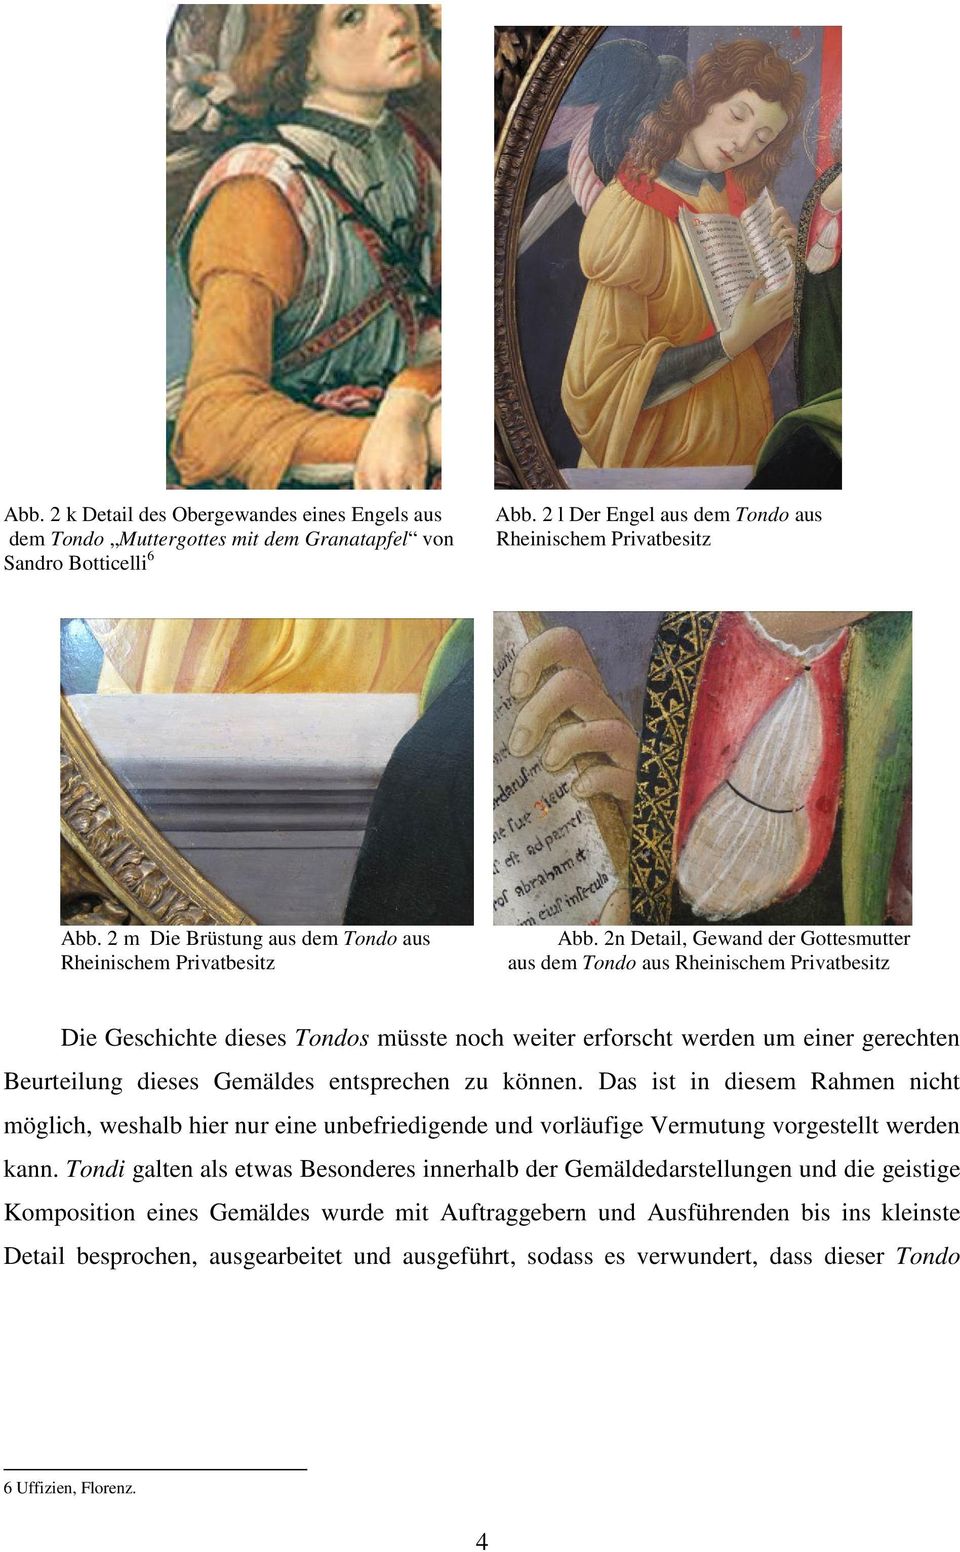 2n Detail, Gewand der Gottesmutter aus dem Tondo aus Rheinischem Privatbesitz Die Geschichte dieses Tondos müsste noch weiter erforscht werden um einer gerechten Beurteilung dieses Gemäldes